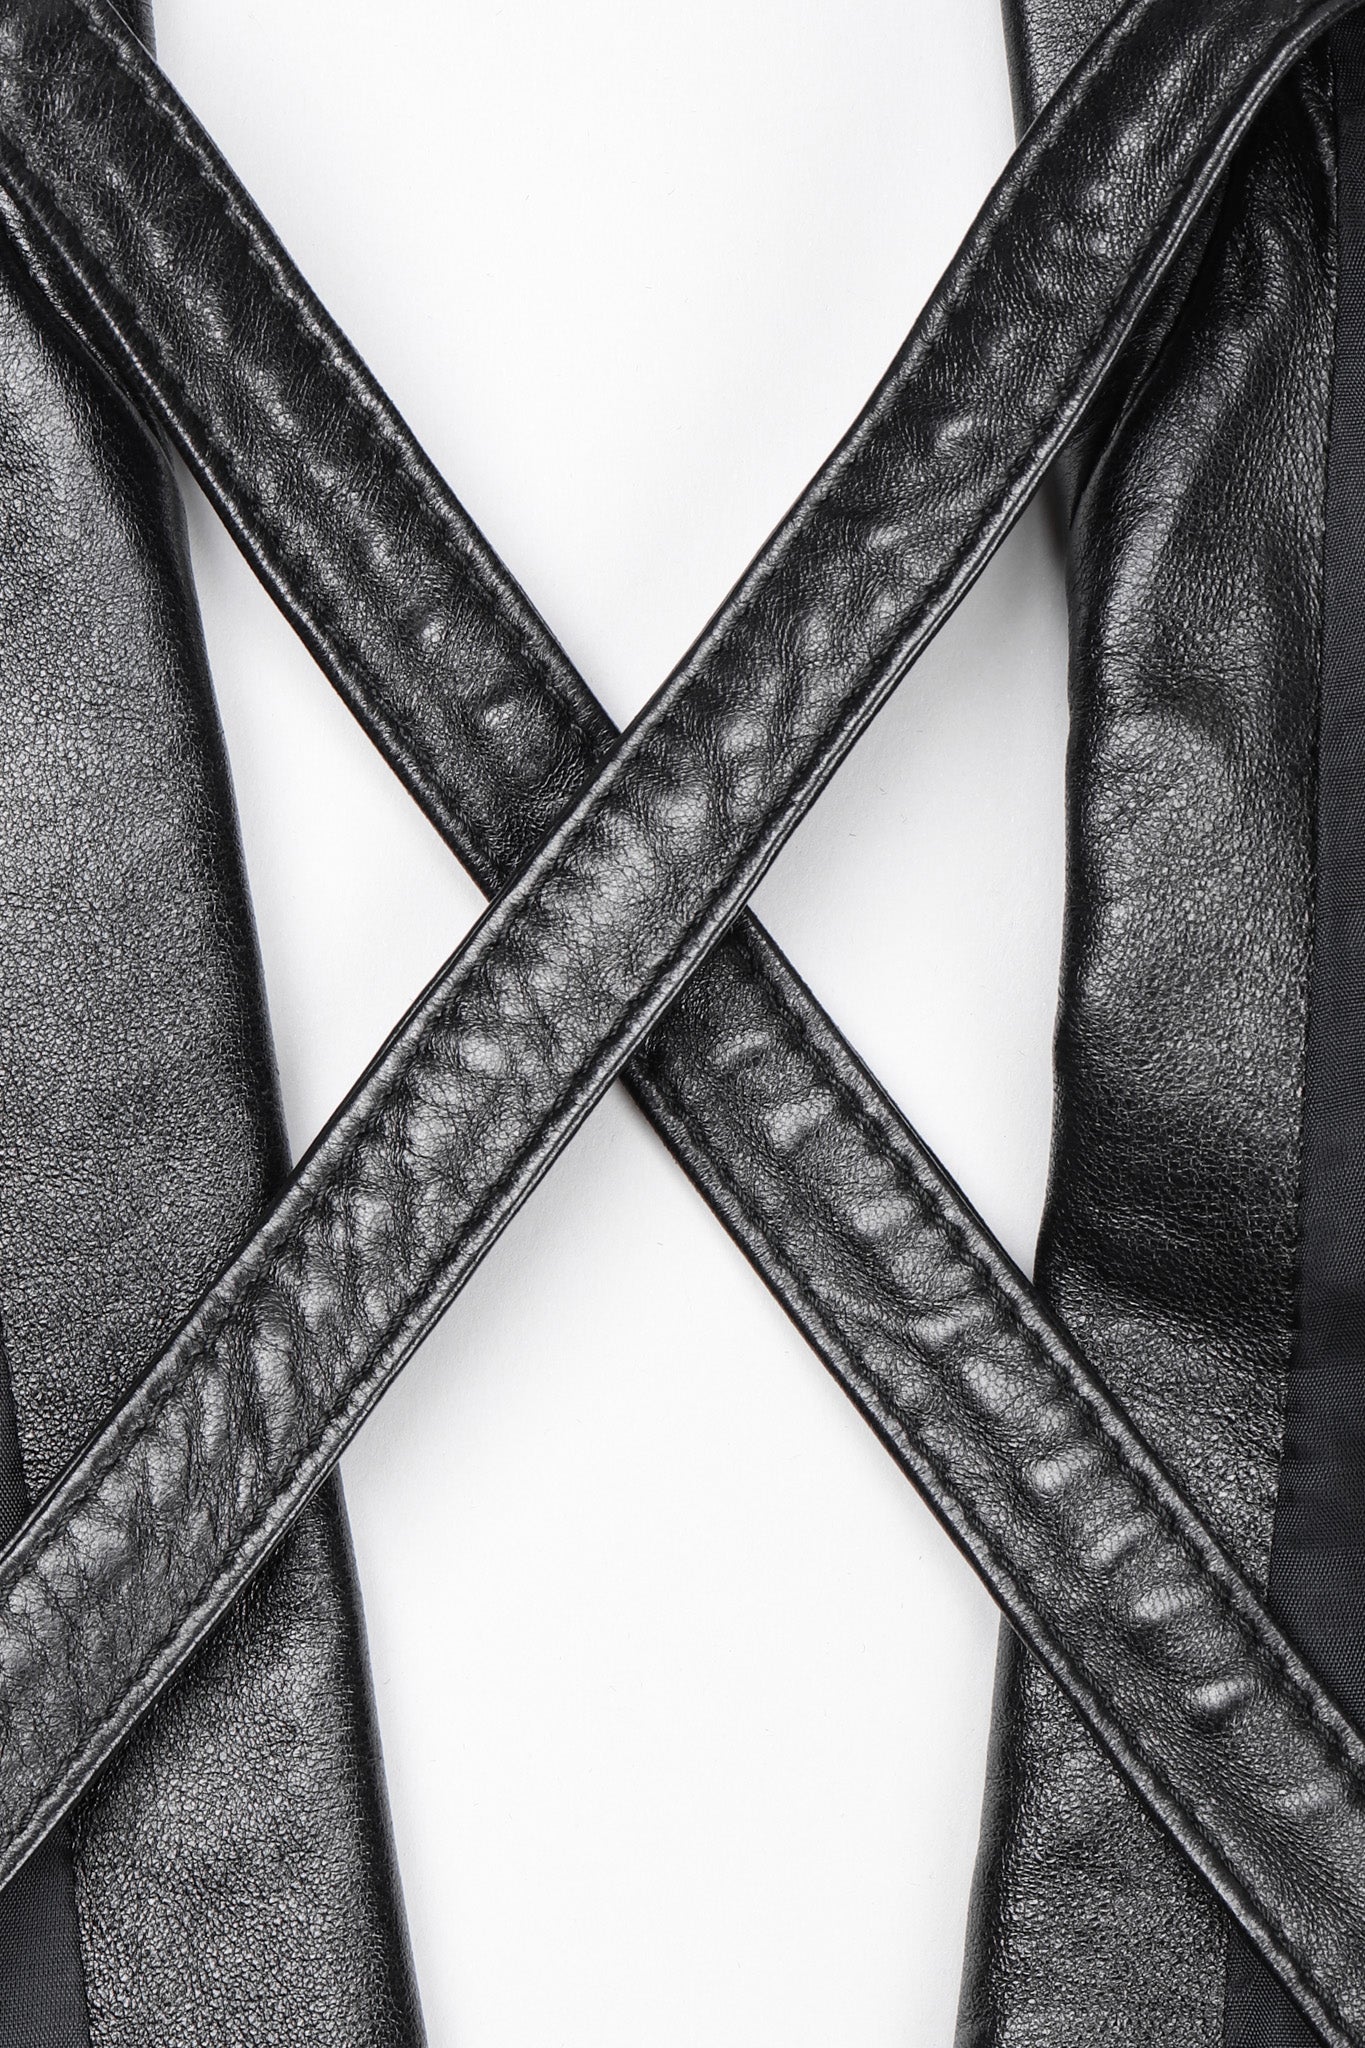 Recess Los Angeles Vintage Martine Sitbon Notched Lapel Leather Corset Harness Vest